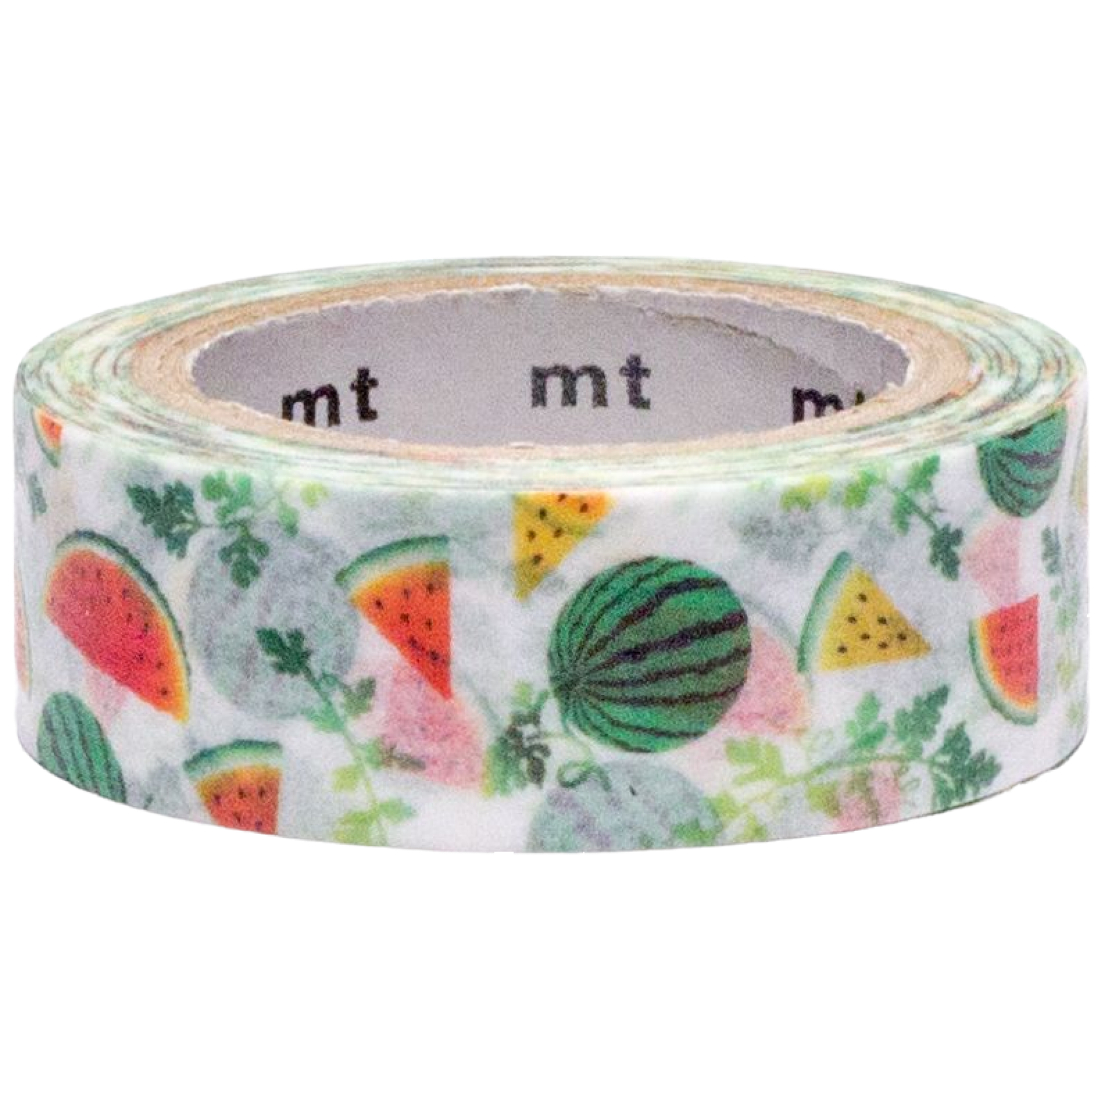 Washi Tape Watermelon MTEX1P164Z mt masking tape